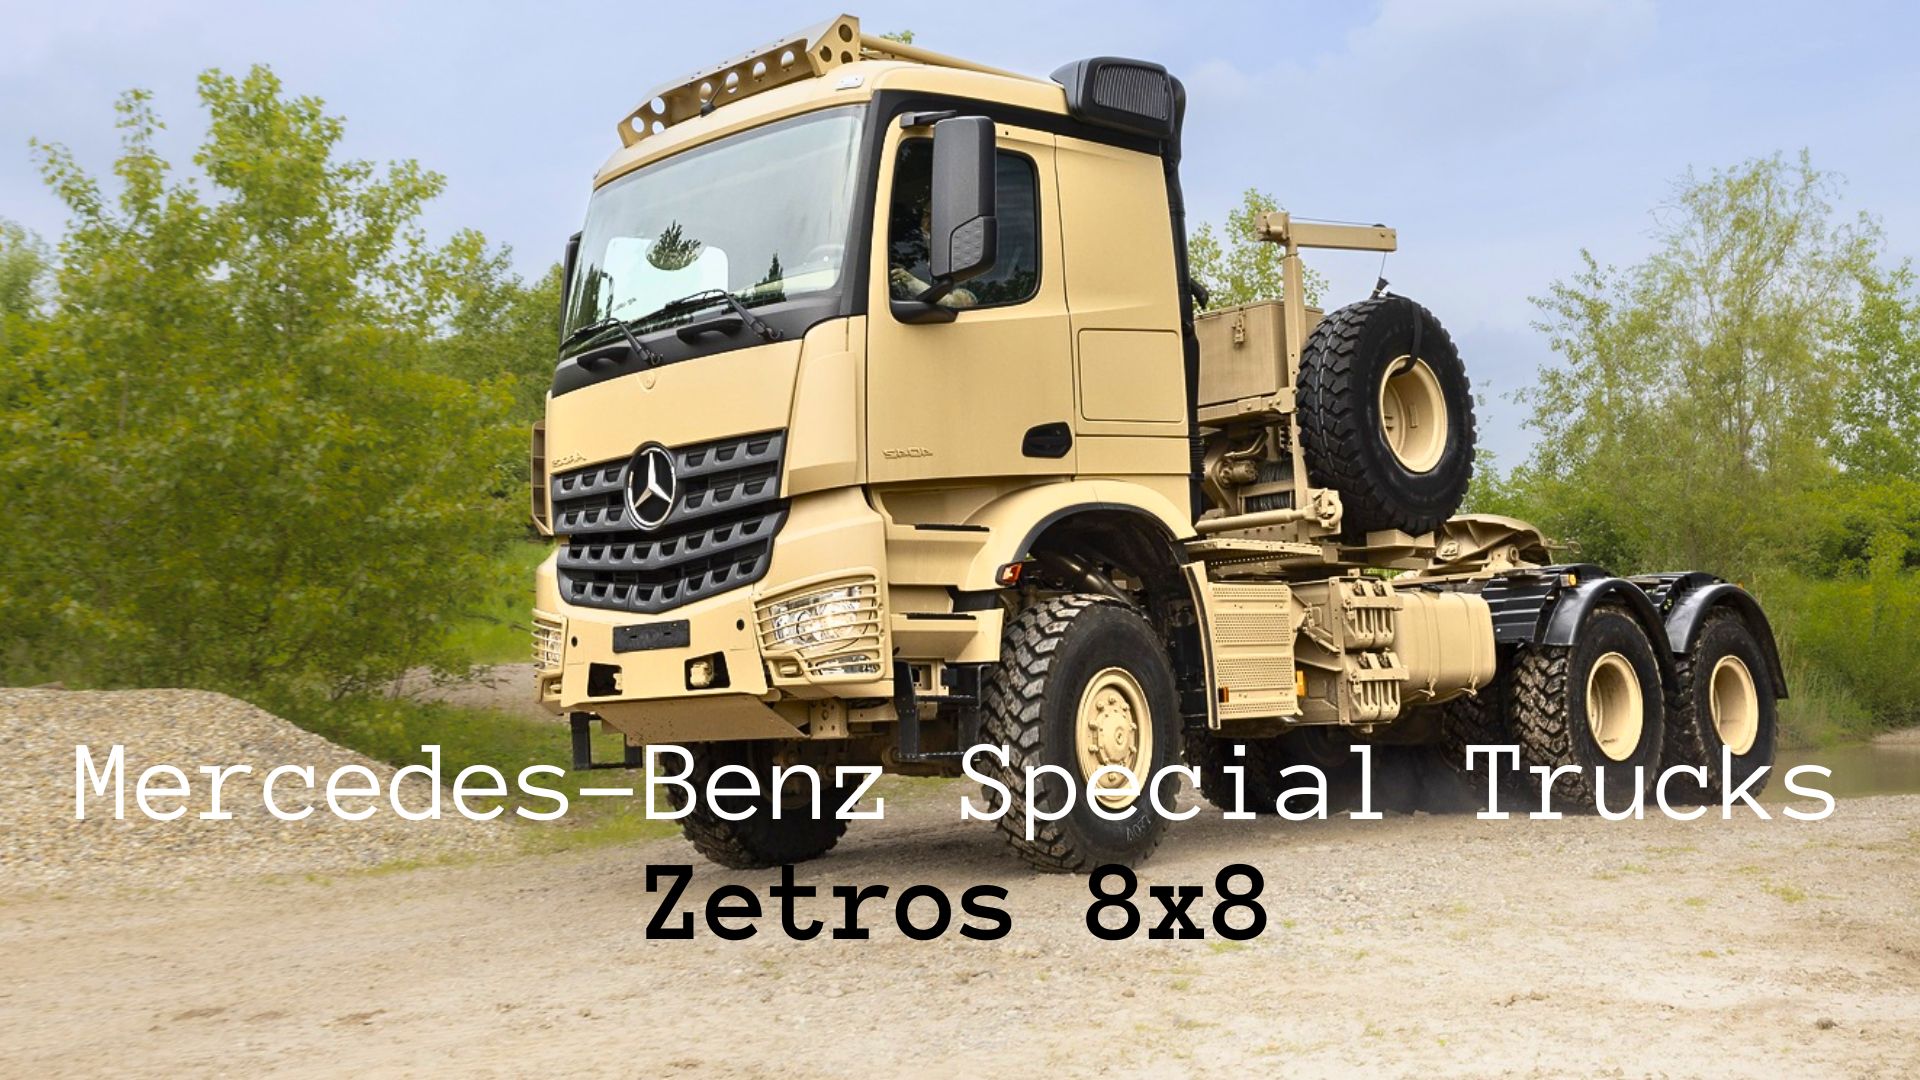 Mercedes-Benz Special Trucks Zetros 8x8